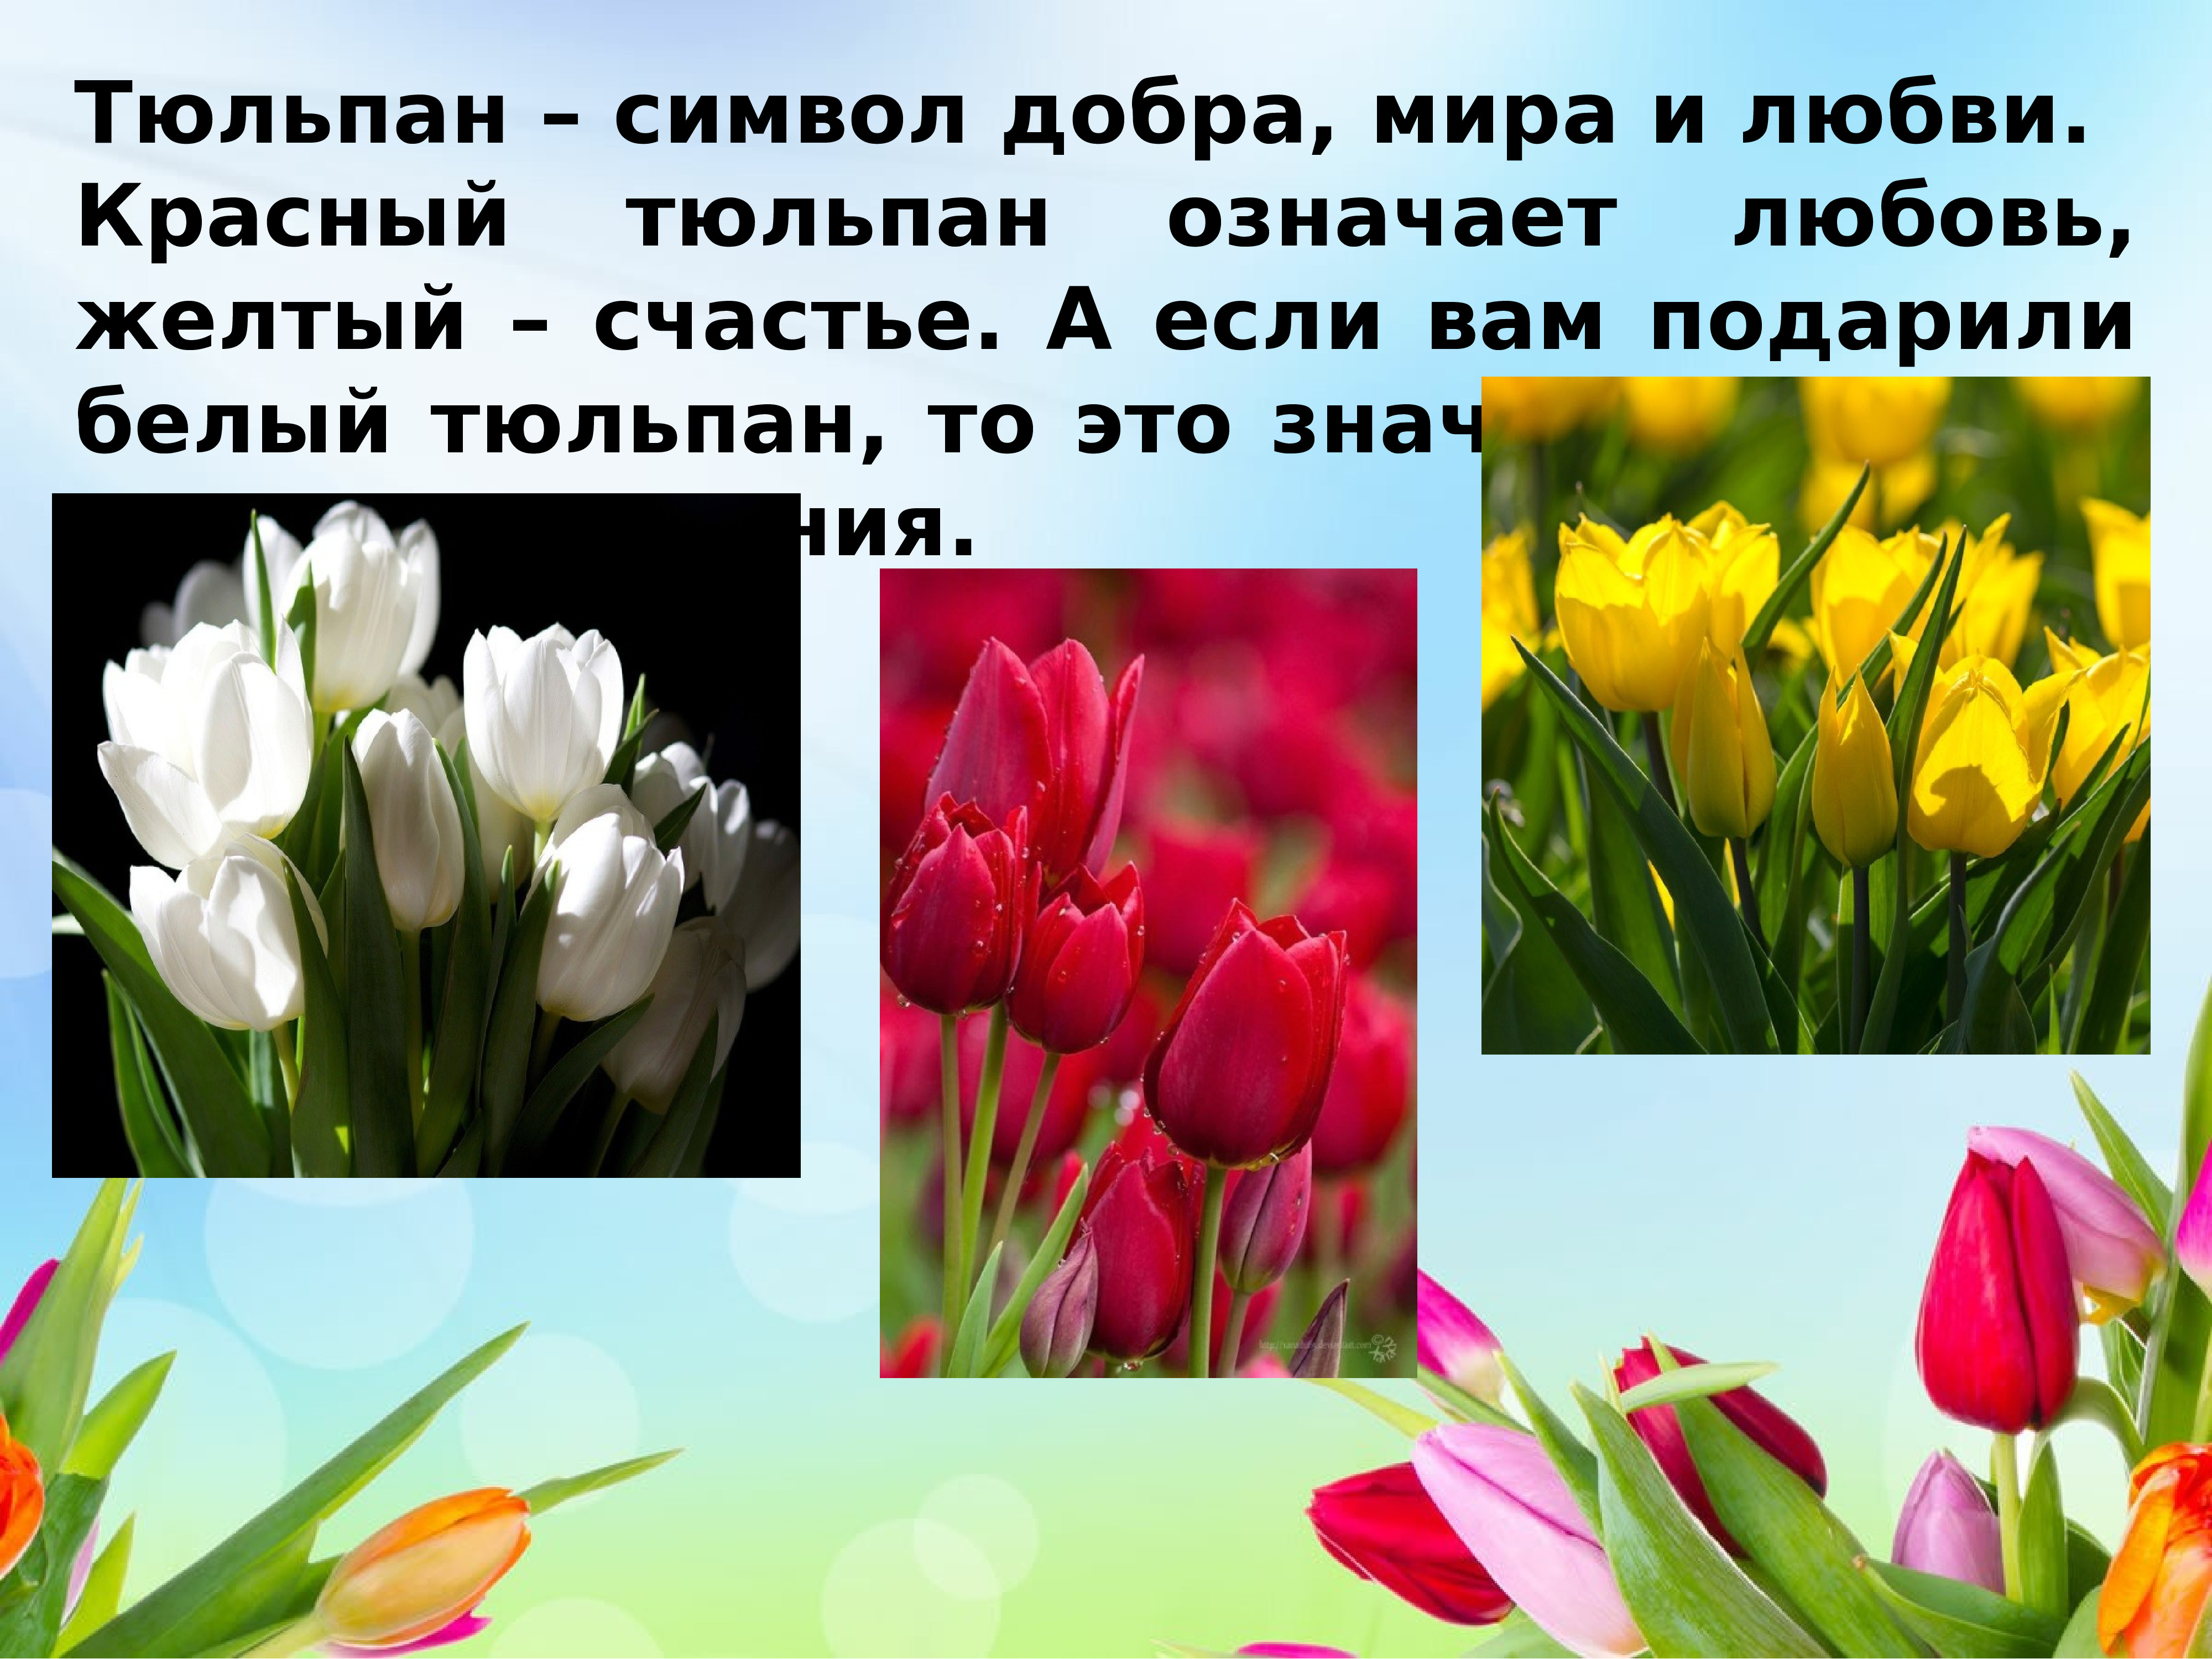 Тюльпаны это символ. Доклад про тюльпан. Рассказать о тюльпане. Проект про тюльпан. Тюльпан краткая информация.